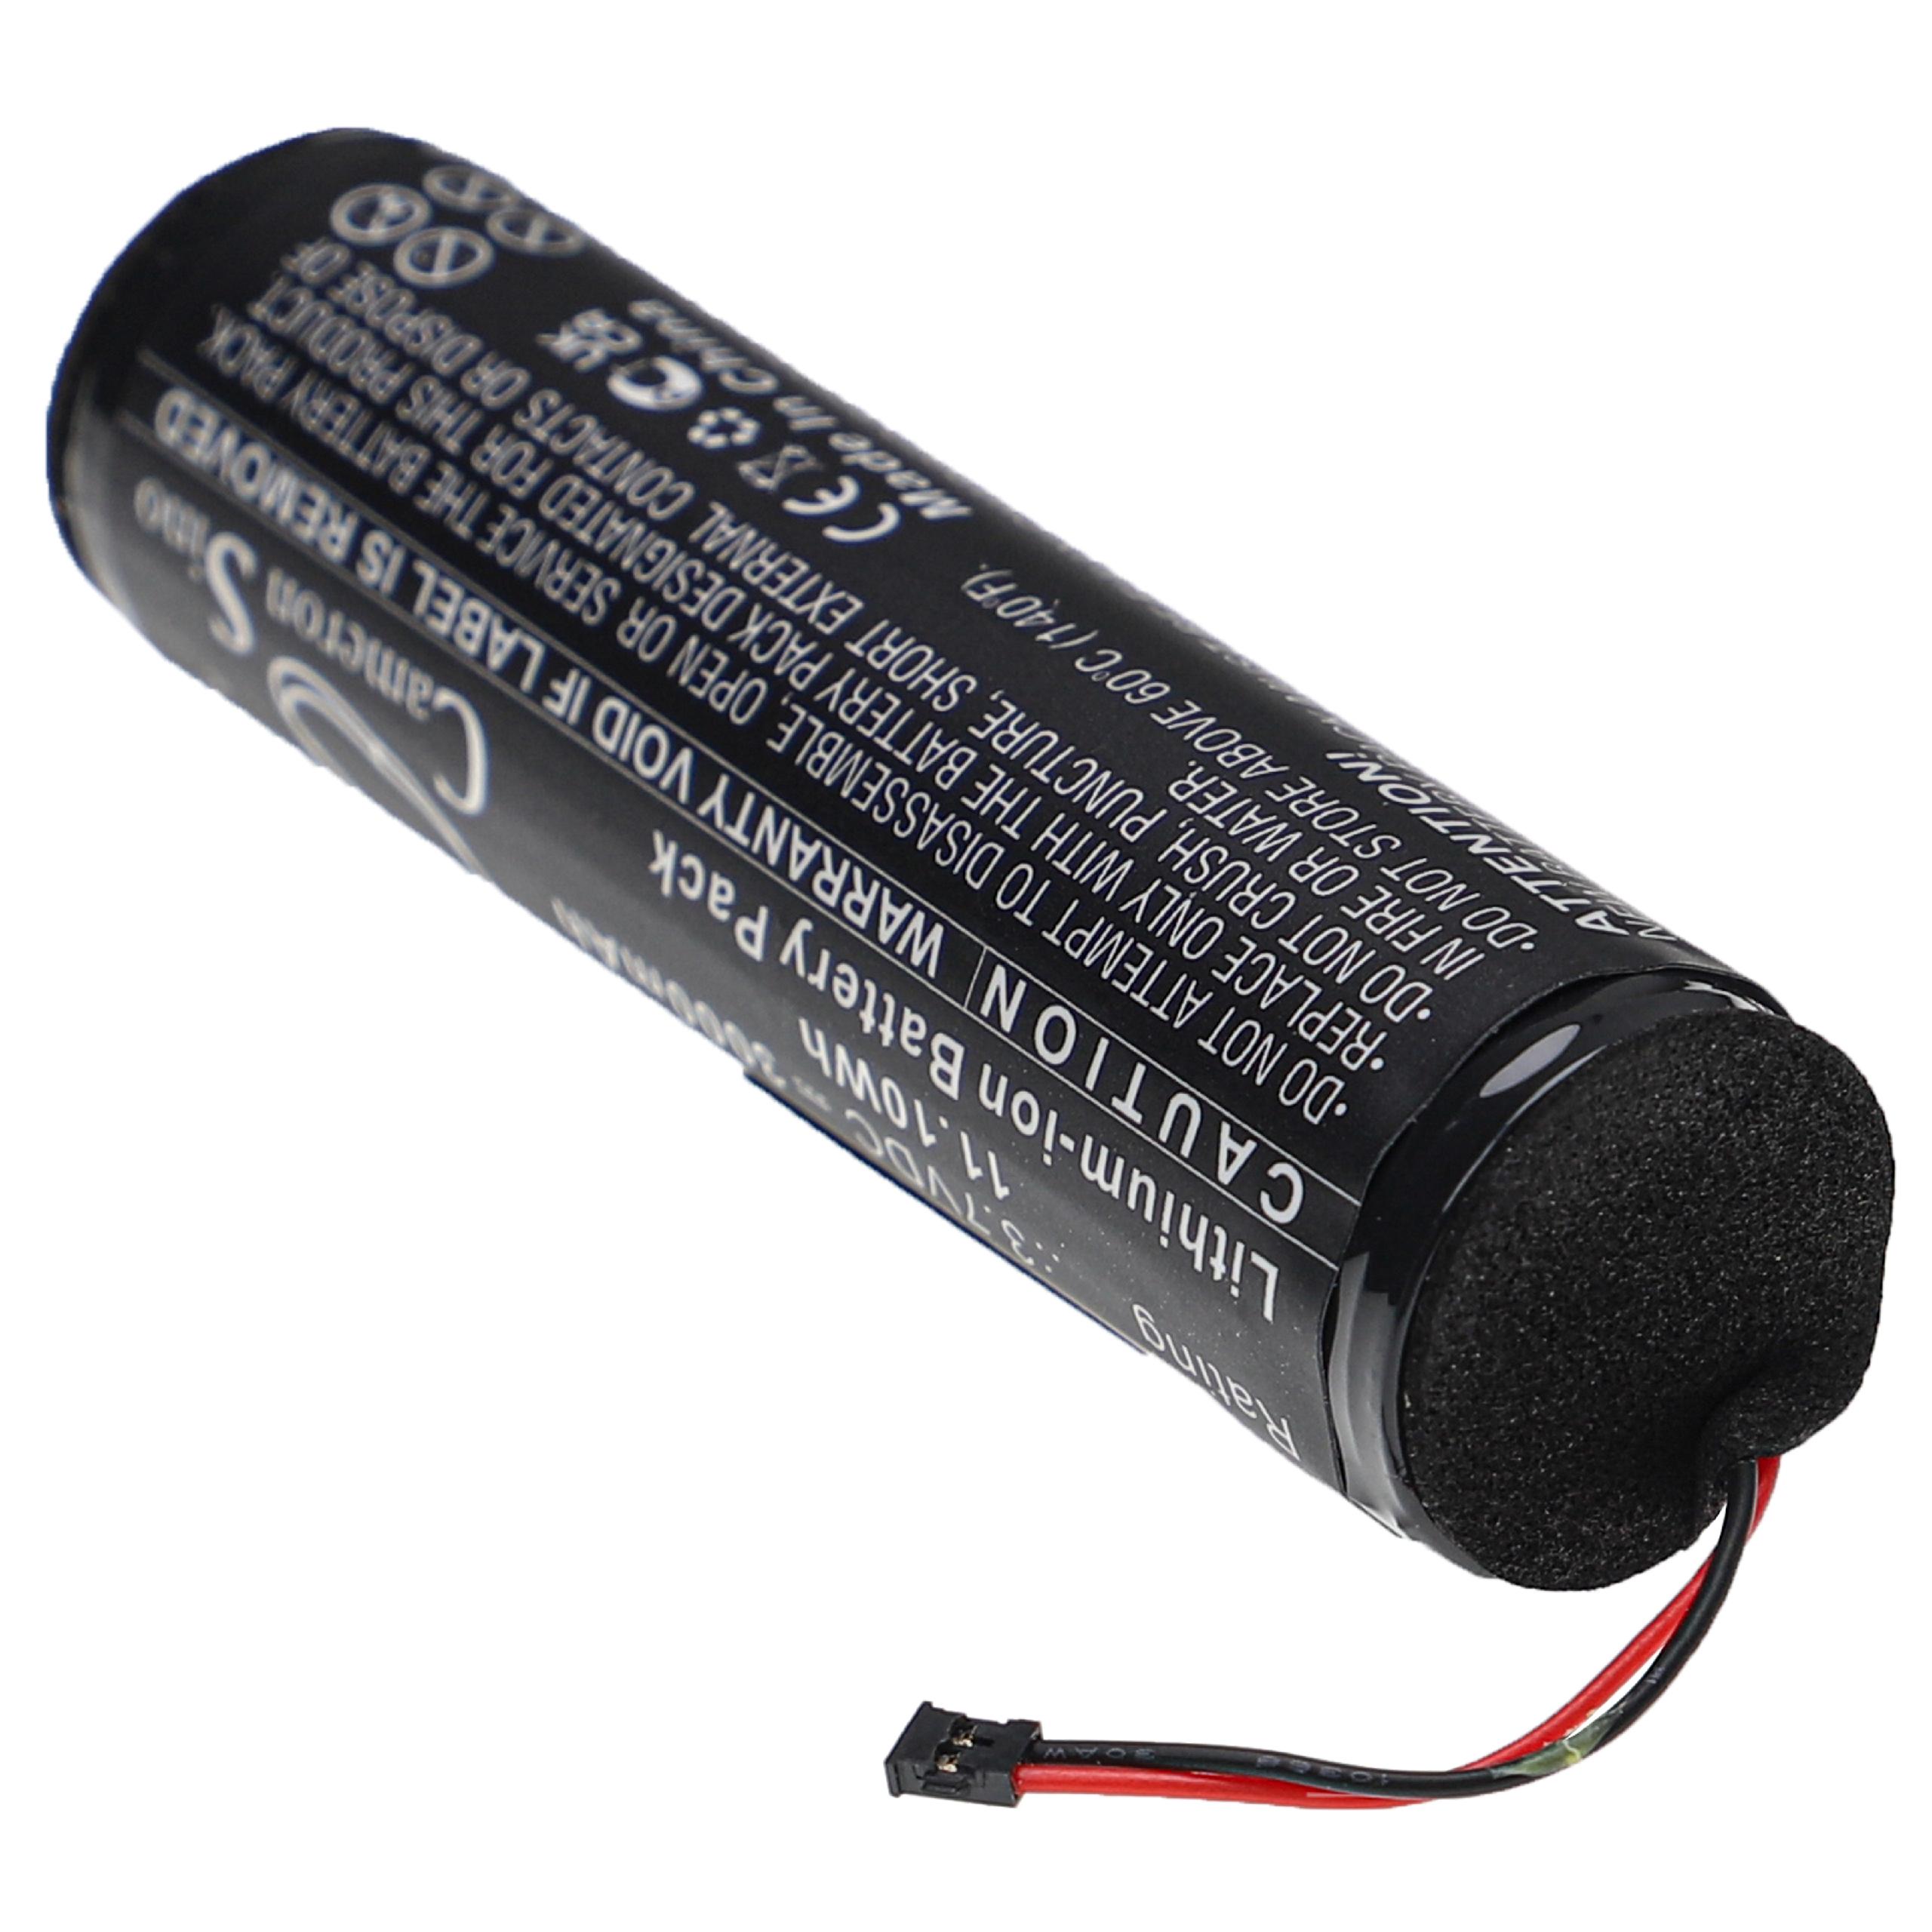 Batterie remplace Philip Morris BAT.000124 pour cigarette électronique - 3000mAh 3,7V Li-ion